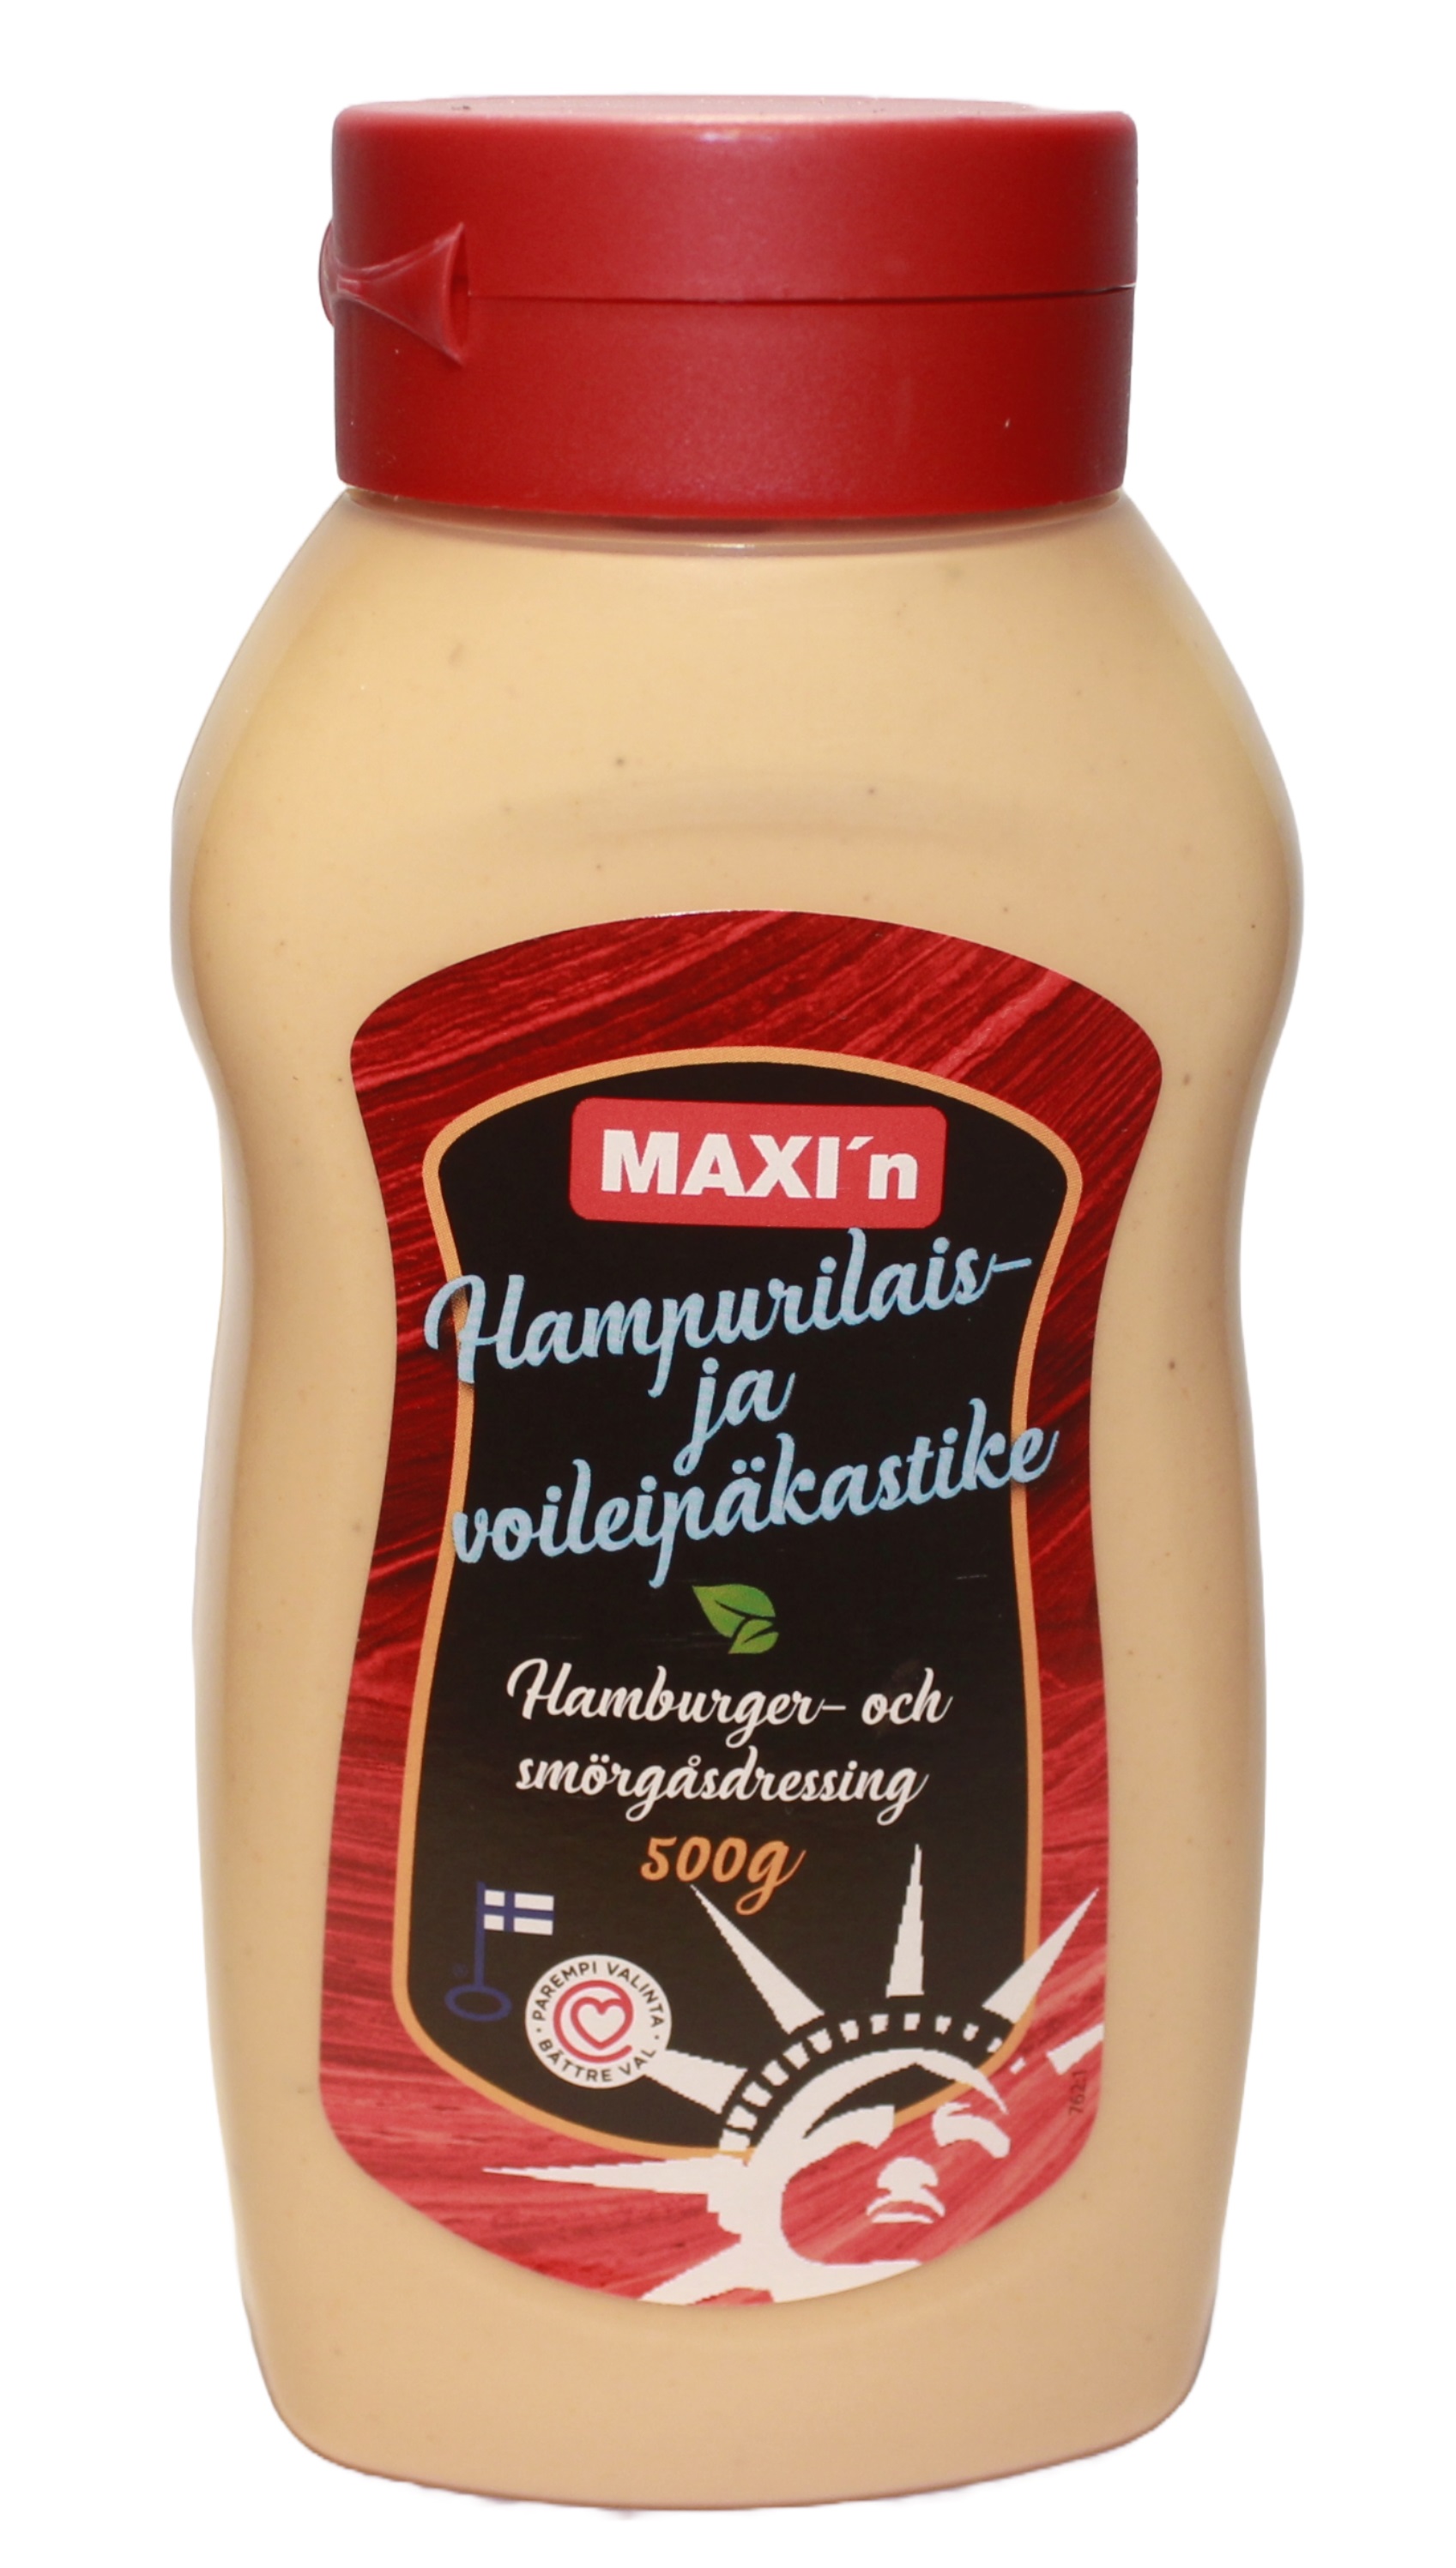 MAXI'n Hampurilais- ja voileipäkastike 500 g